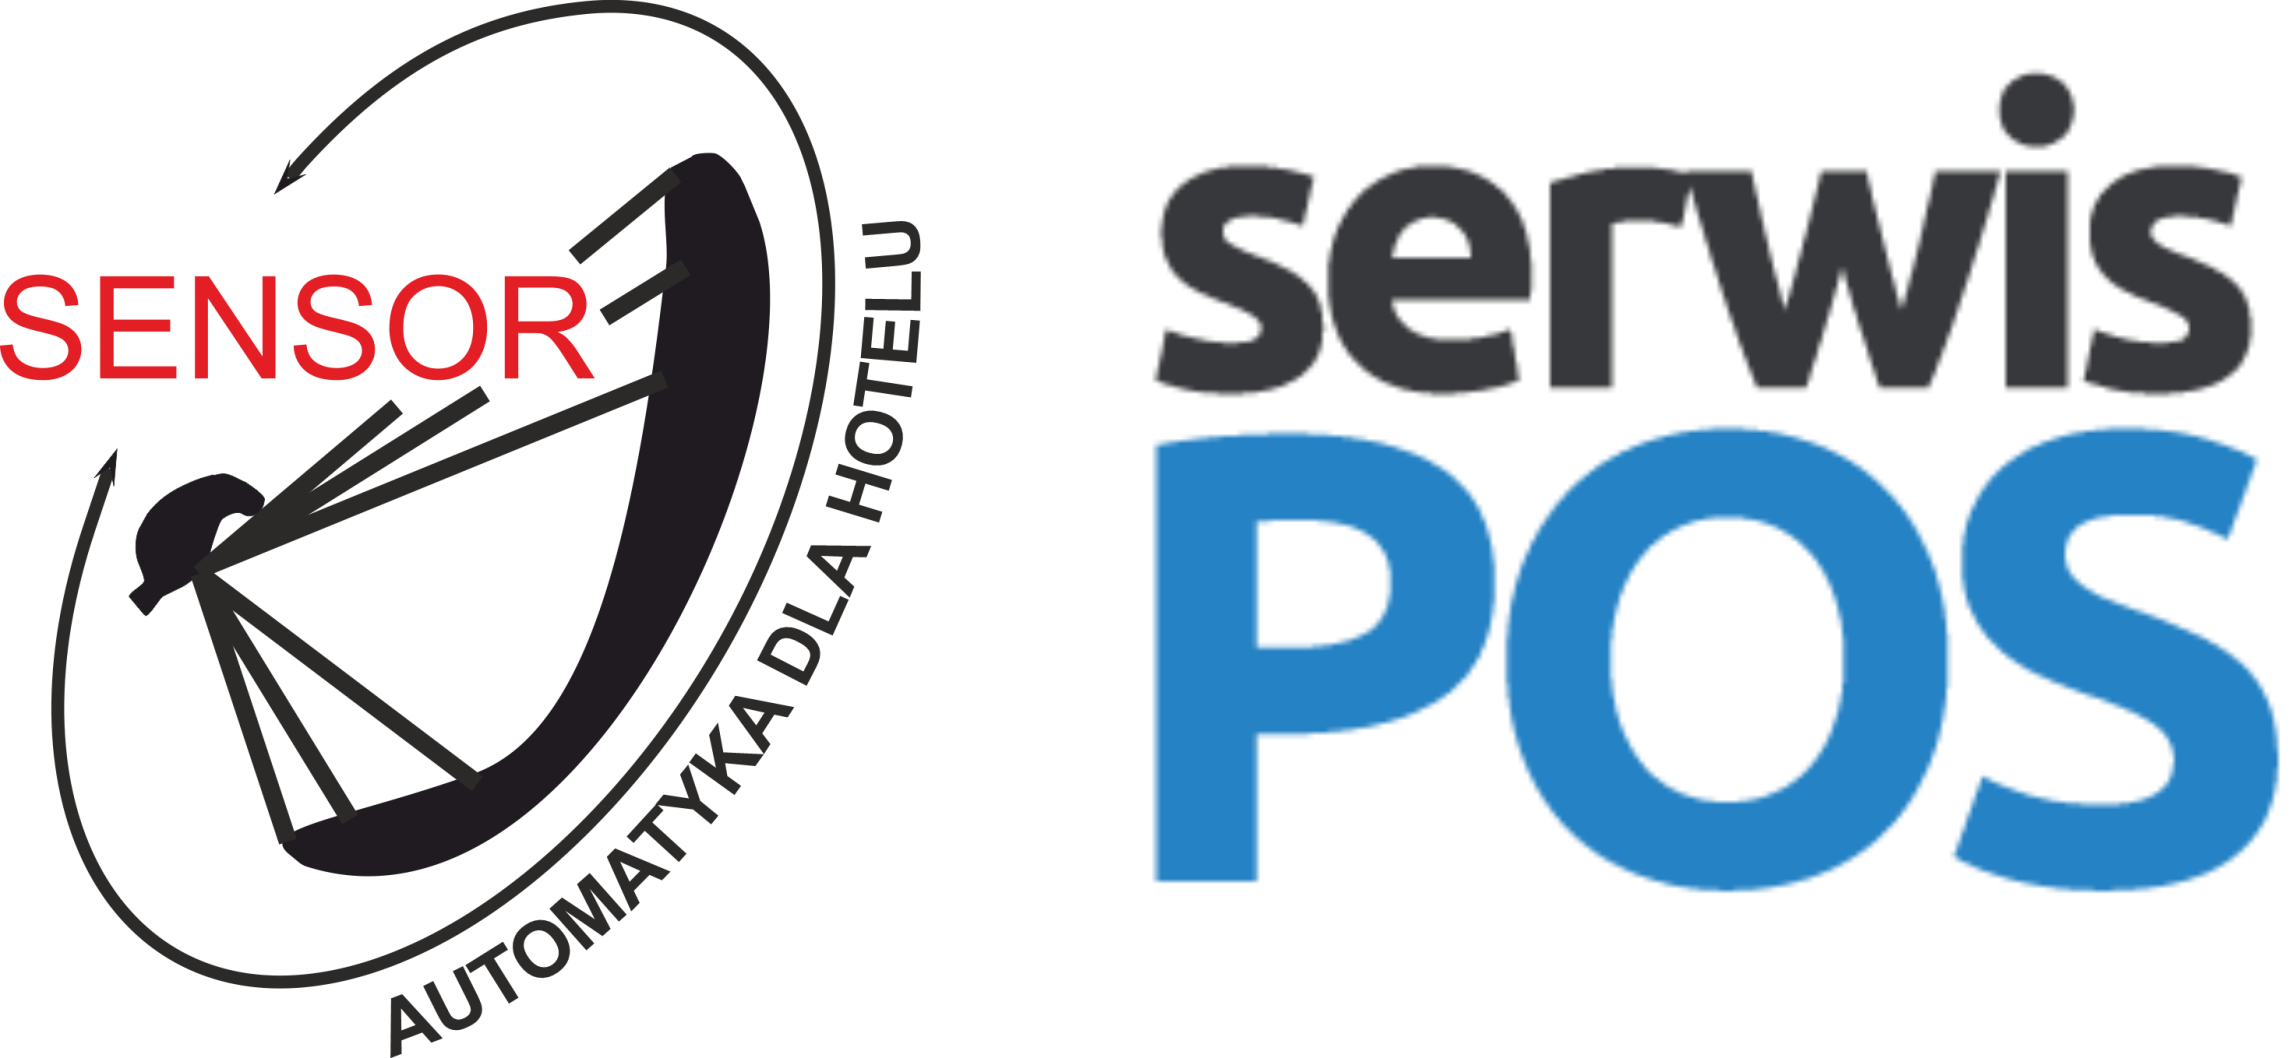 Sensor logo Serwis POS logo